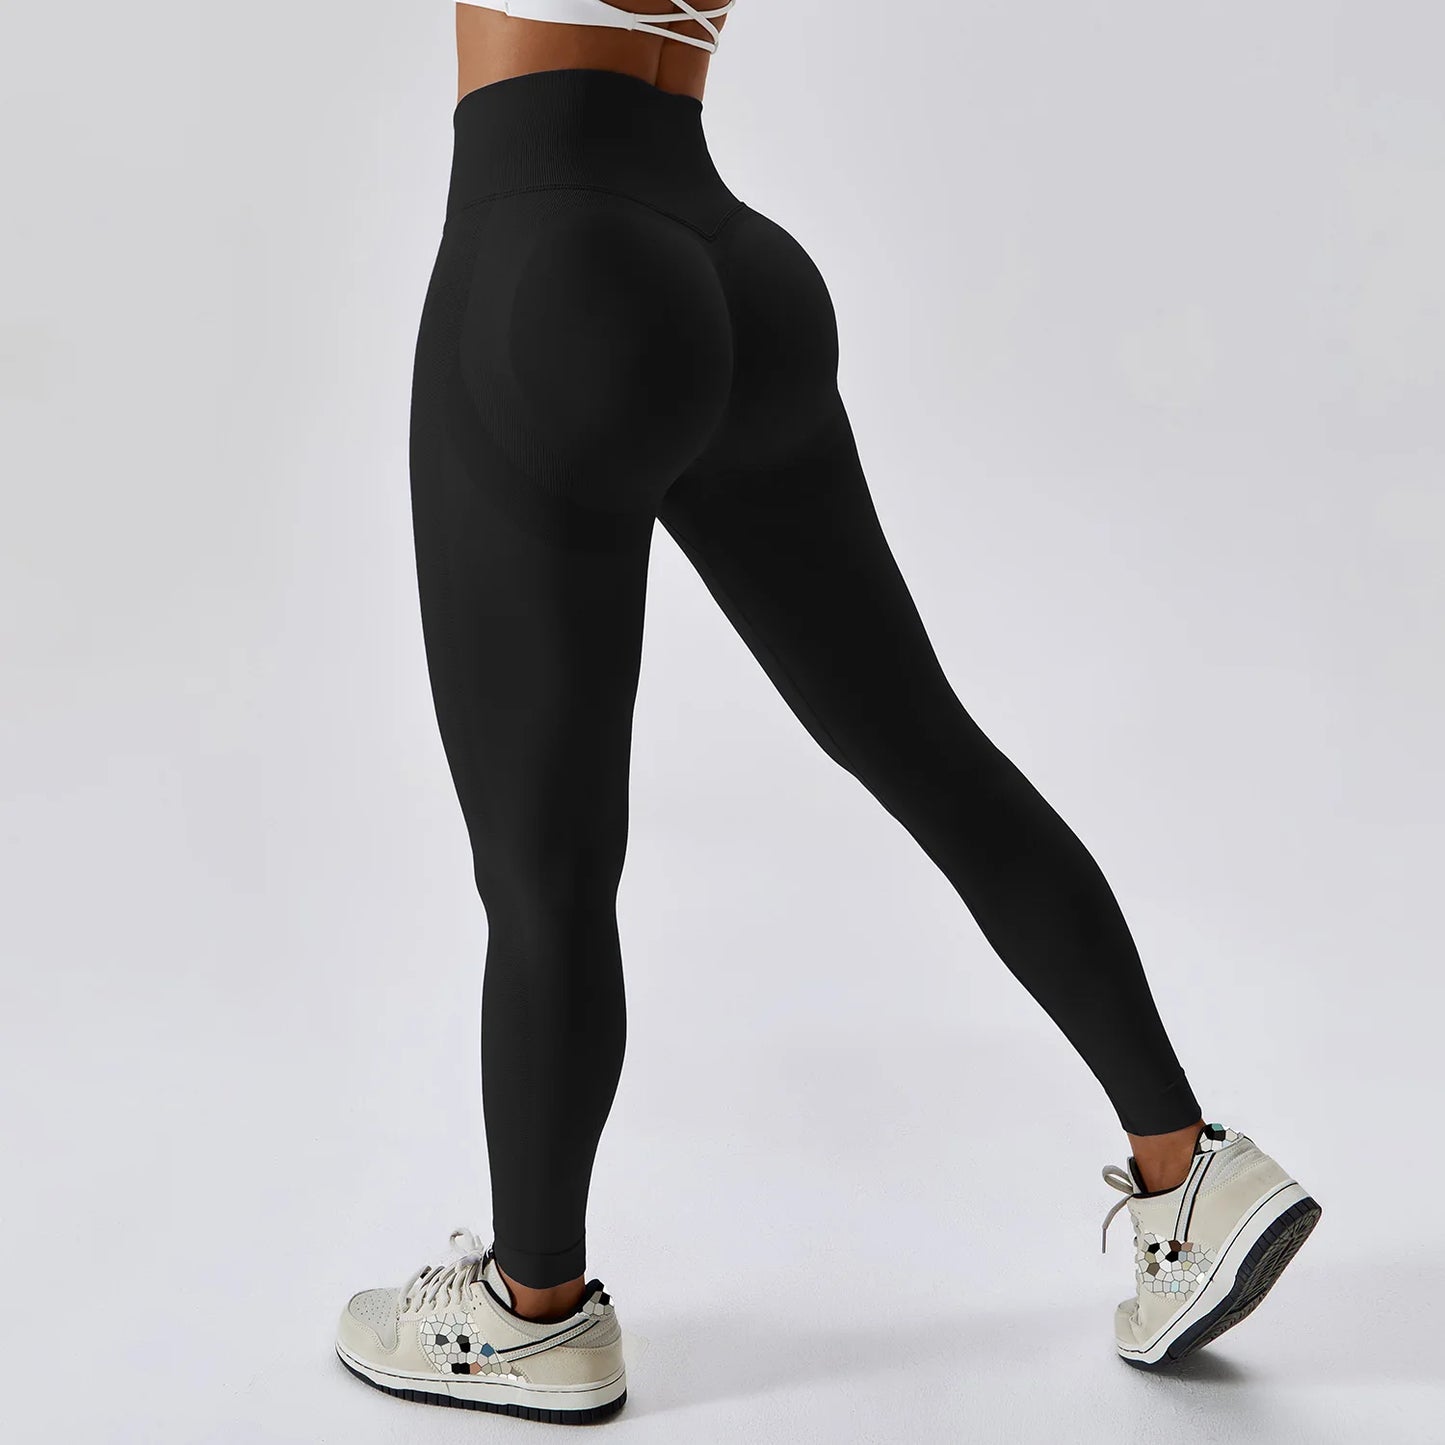 Women Fitness Leggings Gym Sports Workout Pants